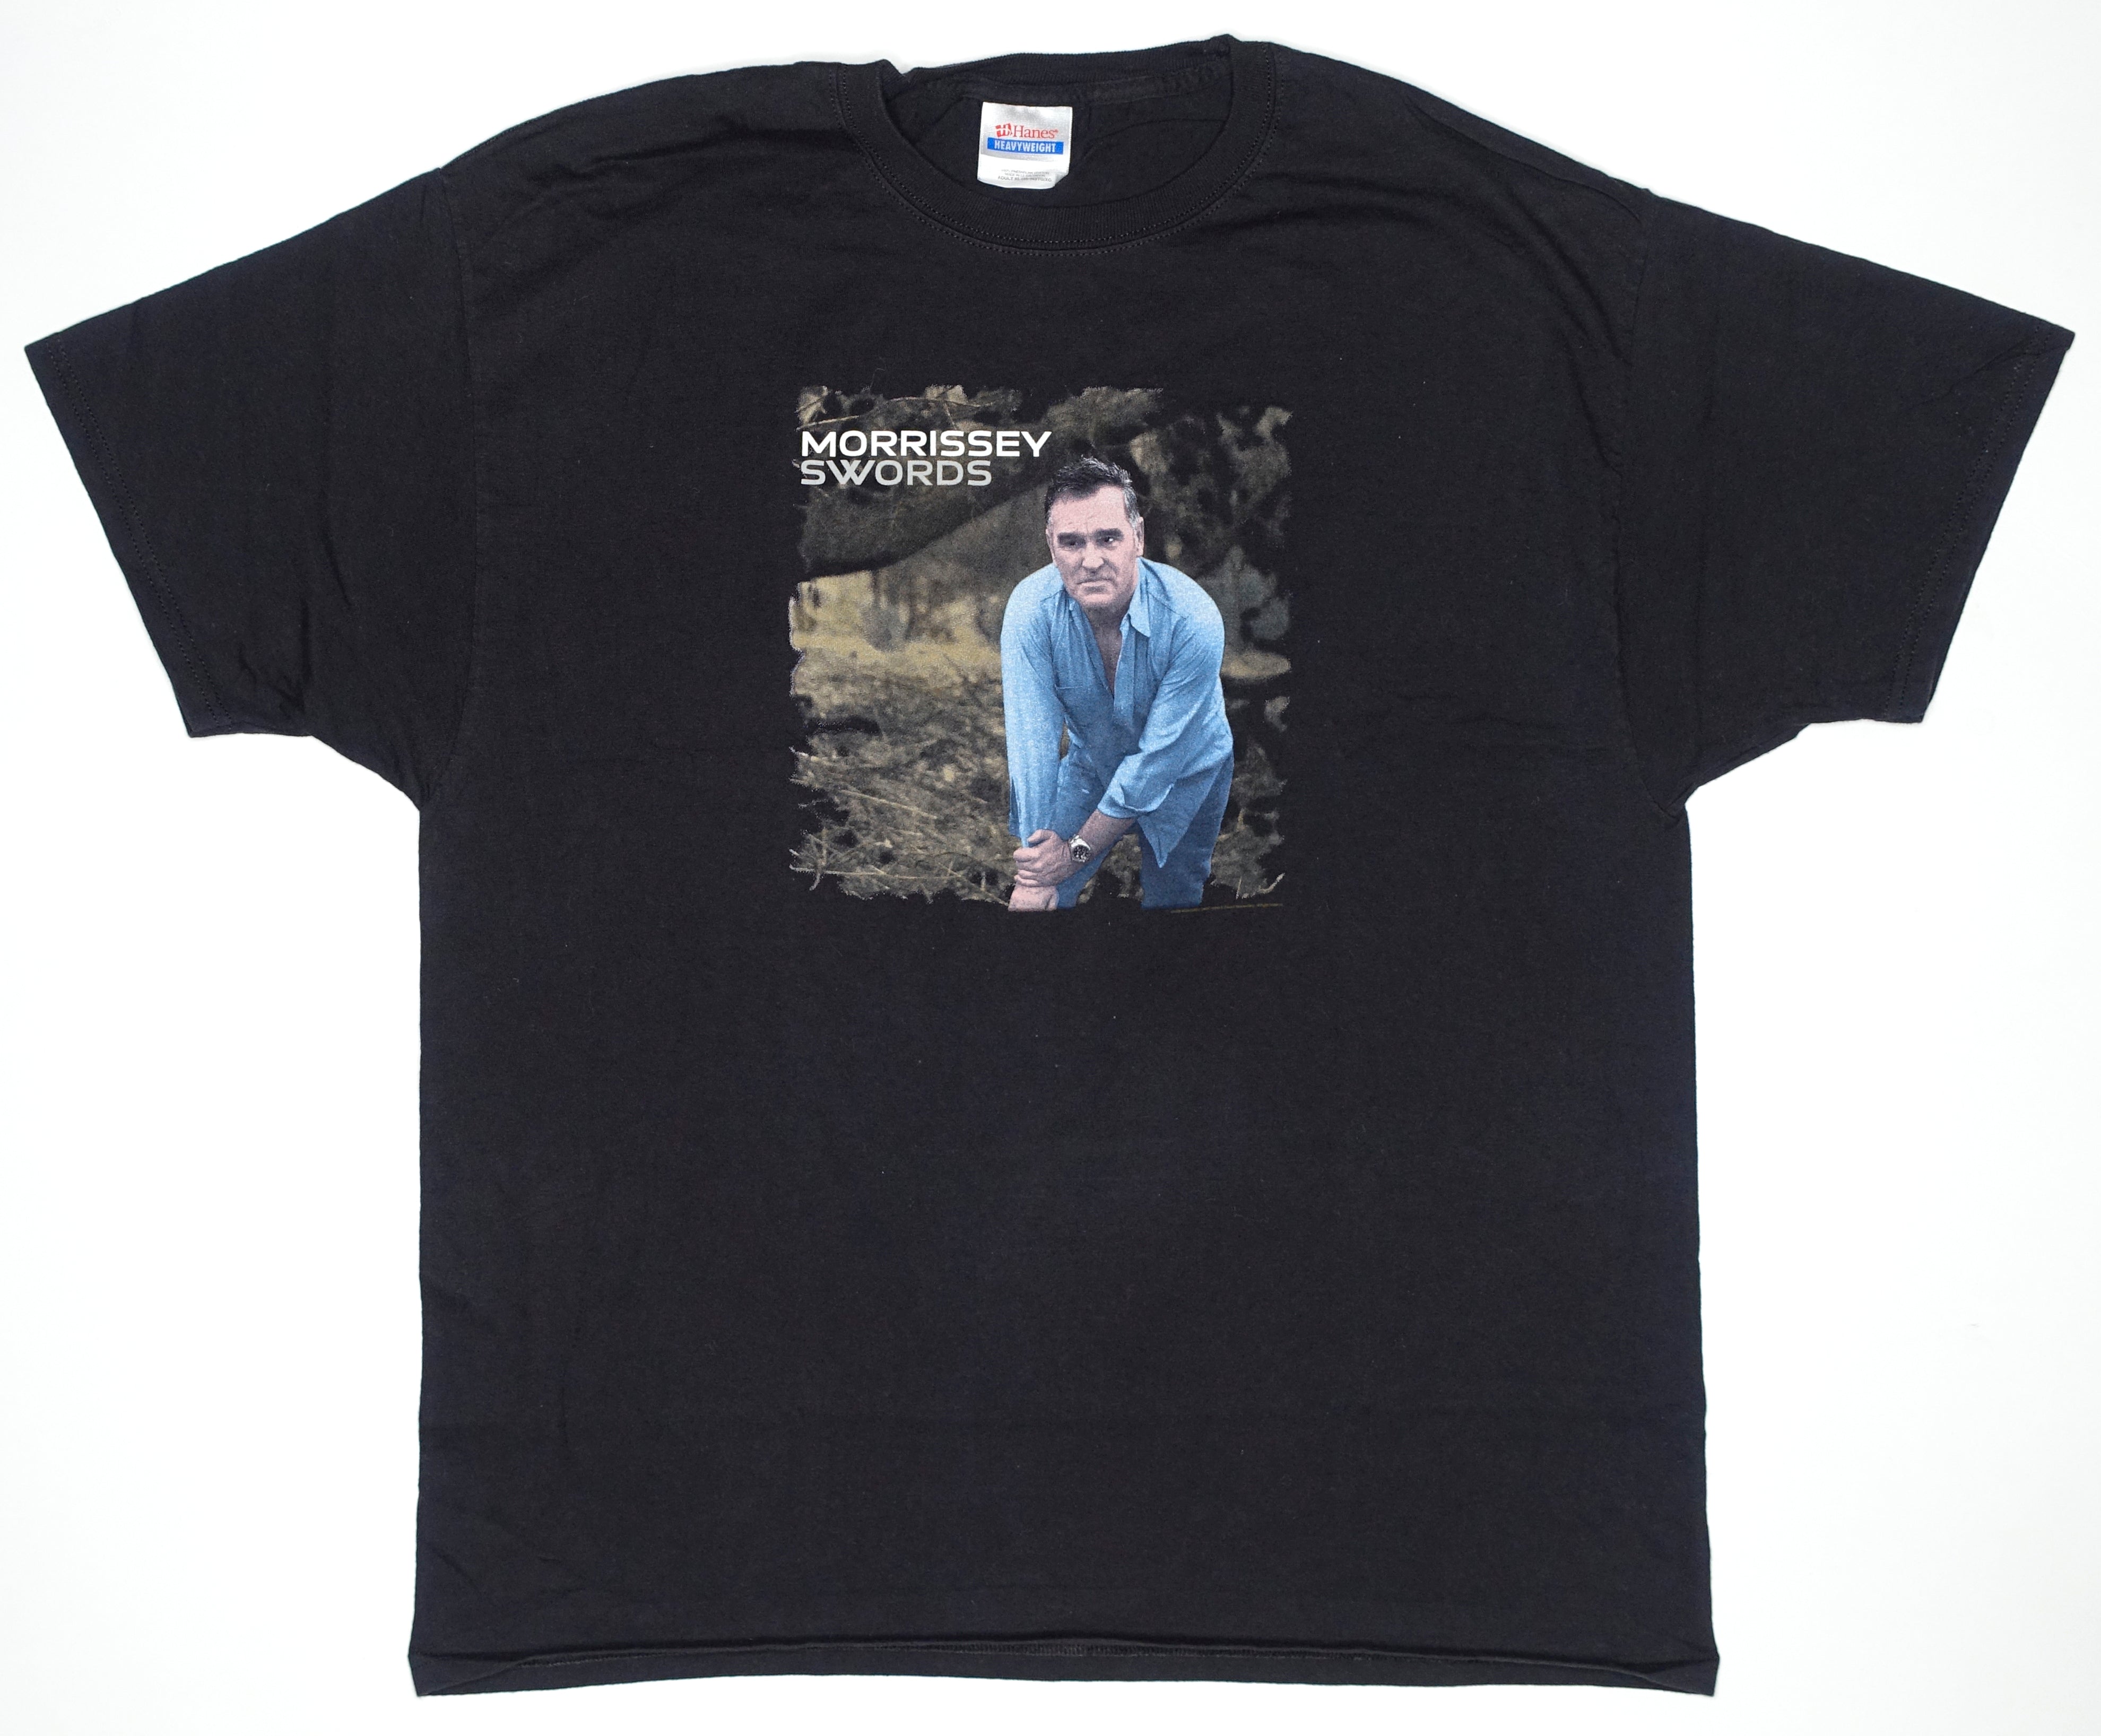 Morrissey - Swords 2009 West Coast US Tour Shirt Size XL